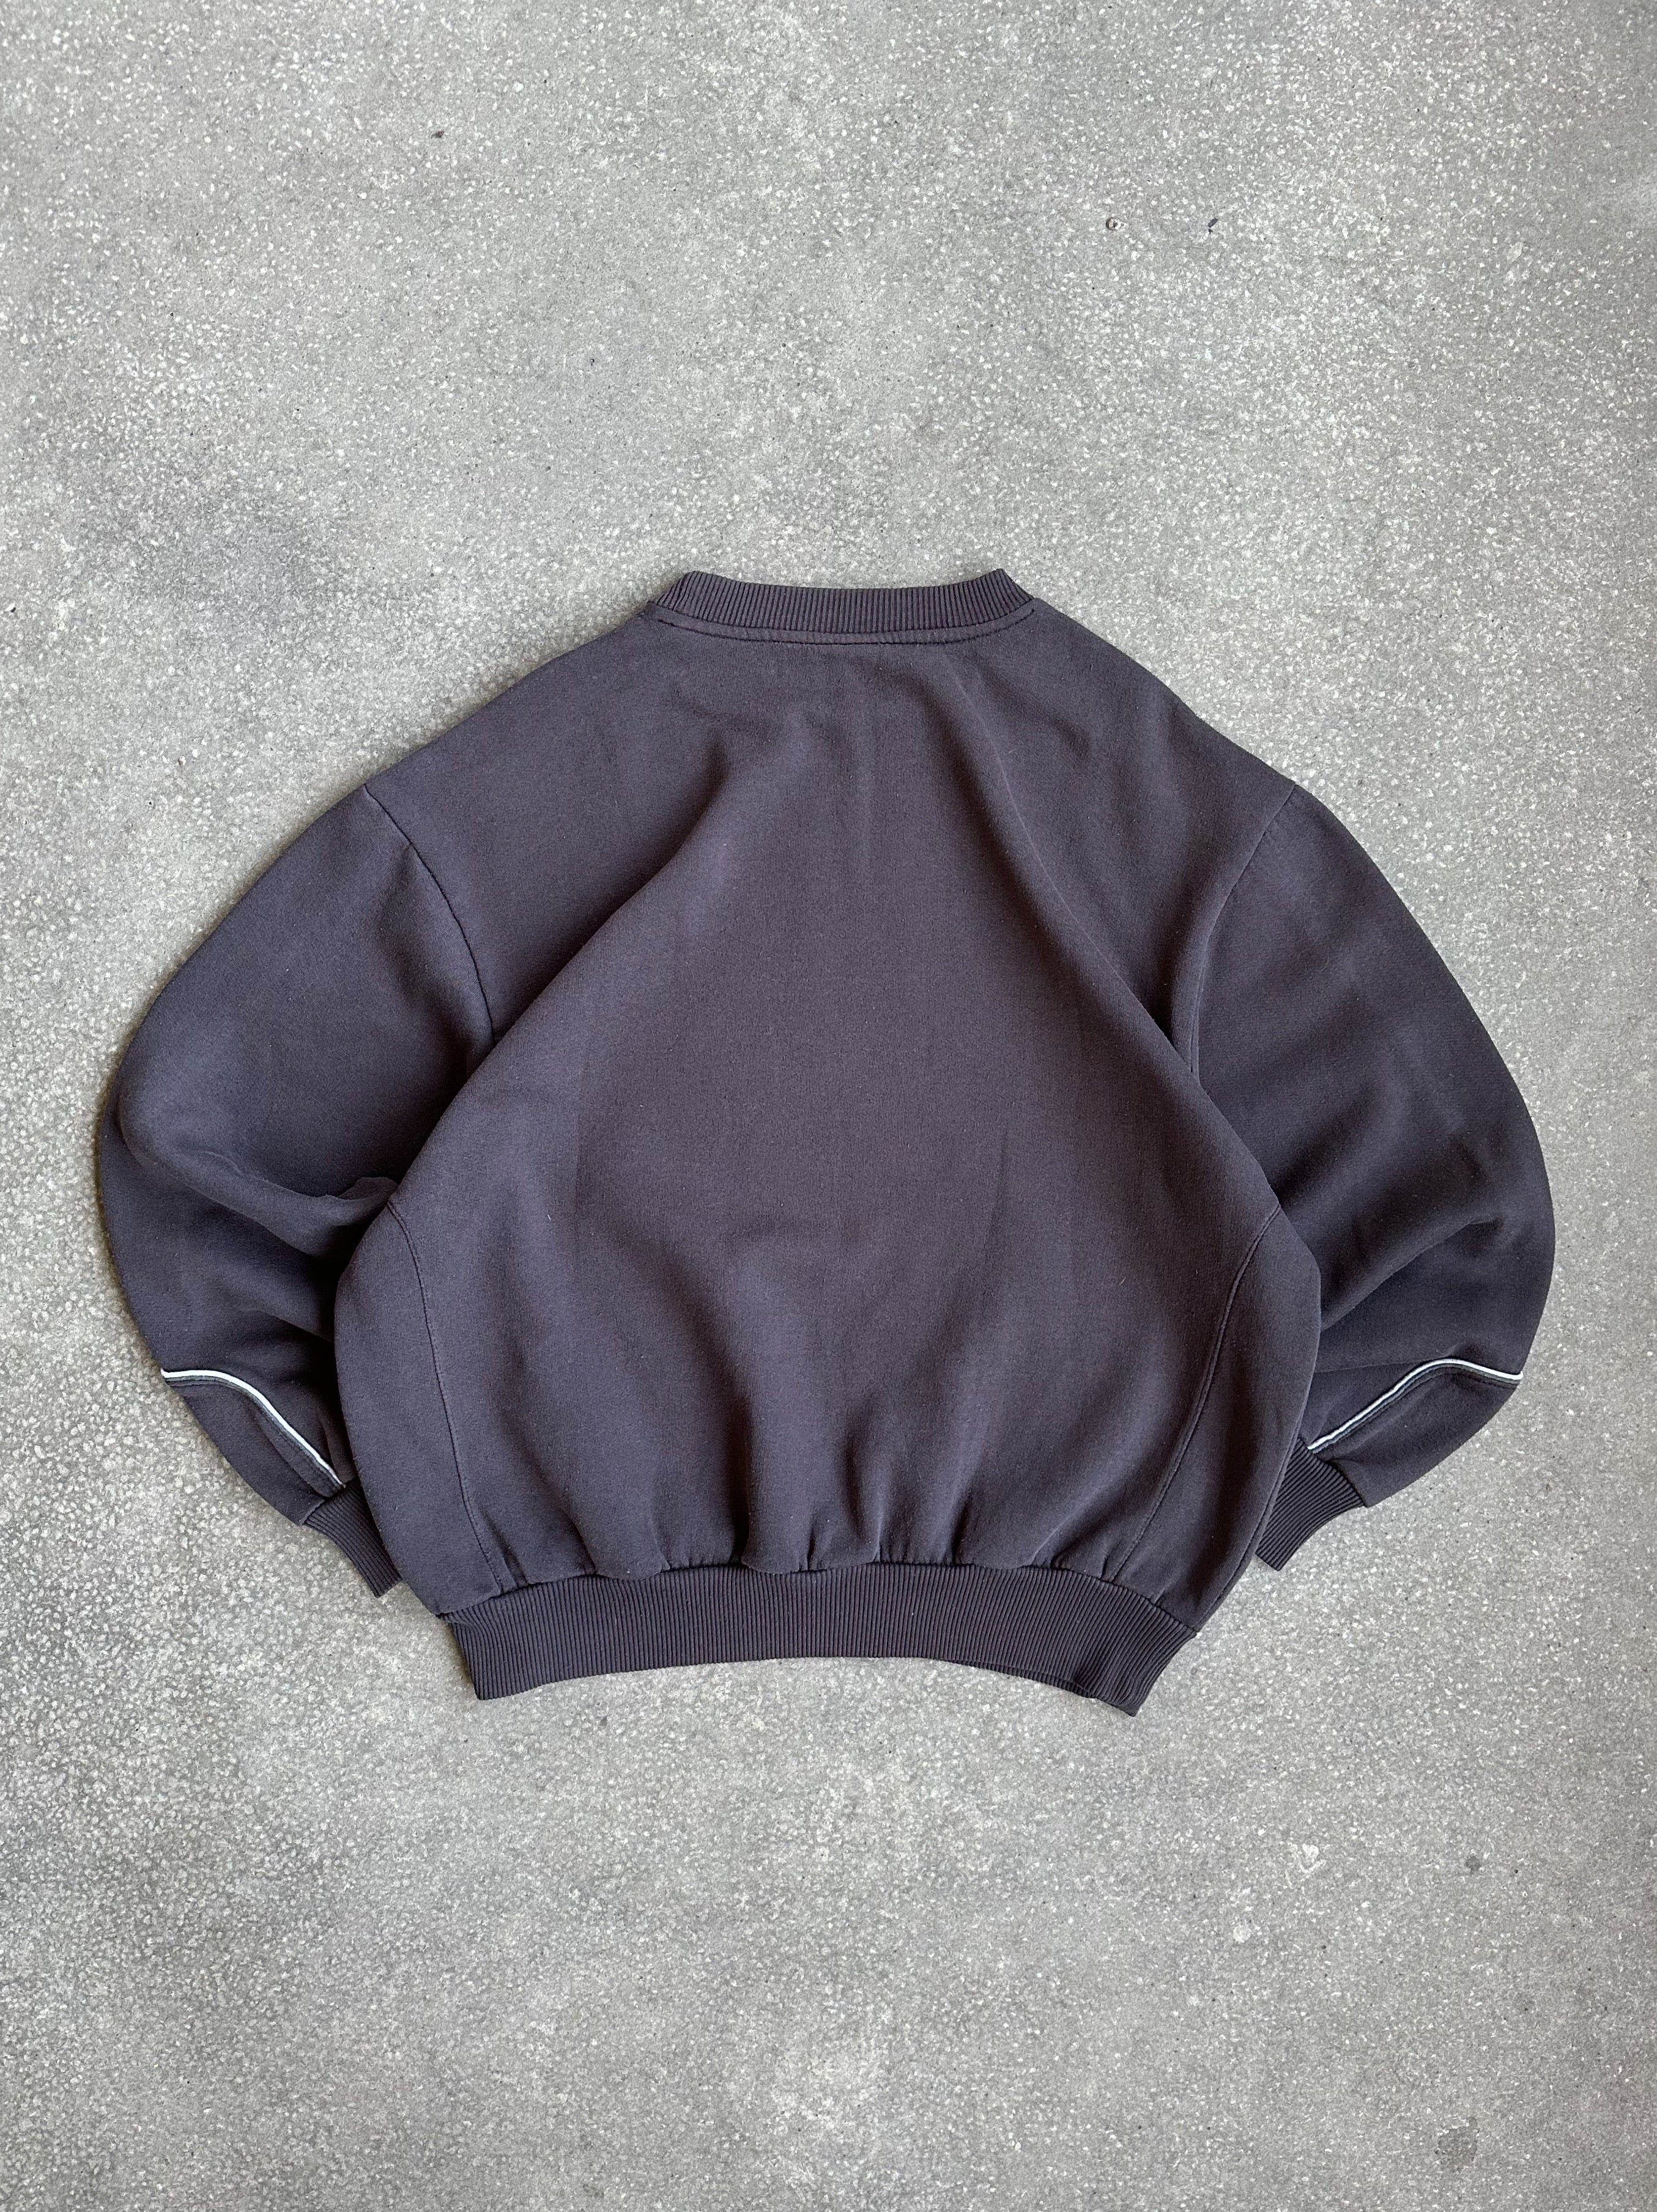 Vintage Umbro Crewneck Sweater - Medium